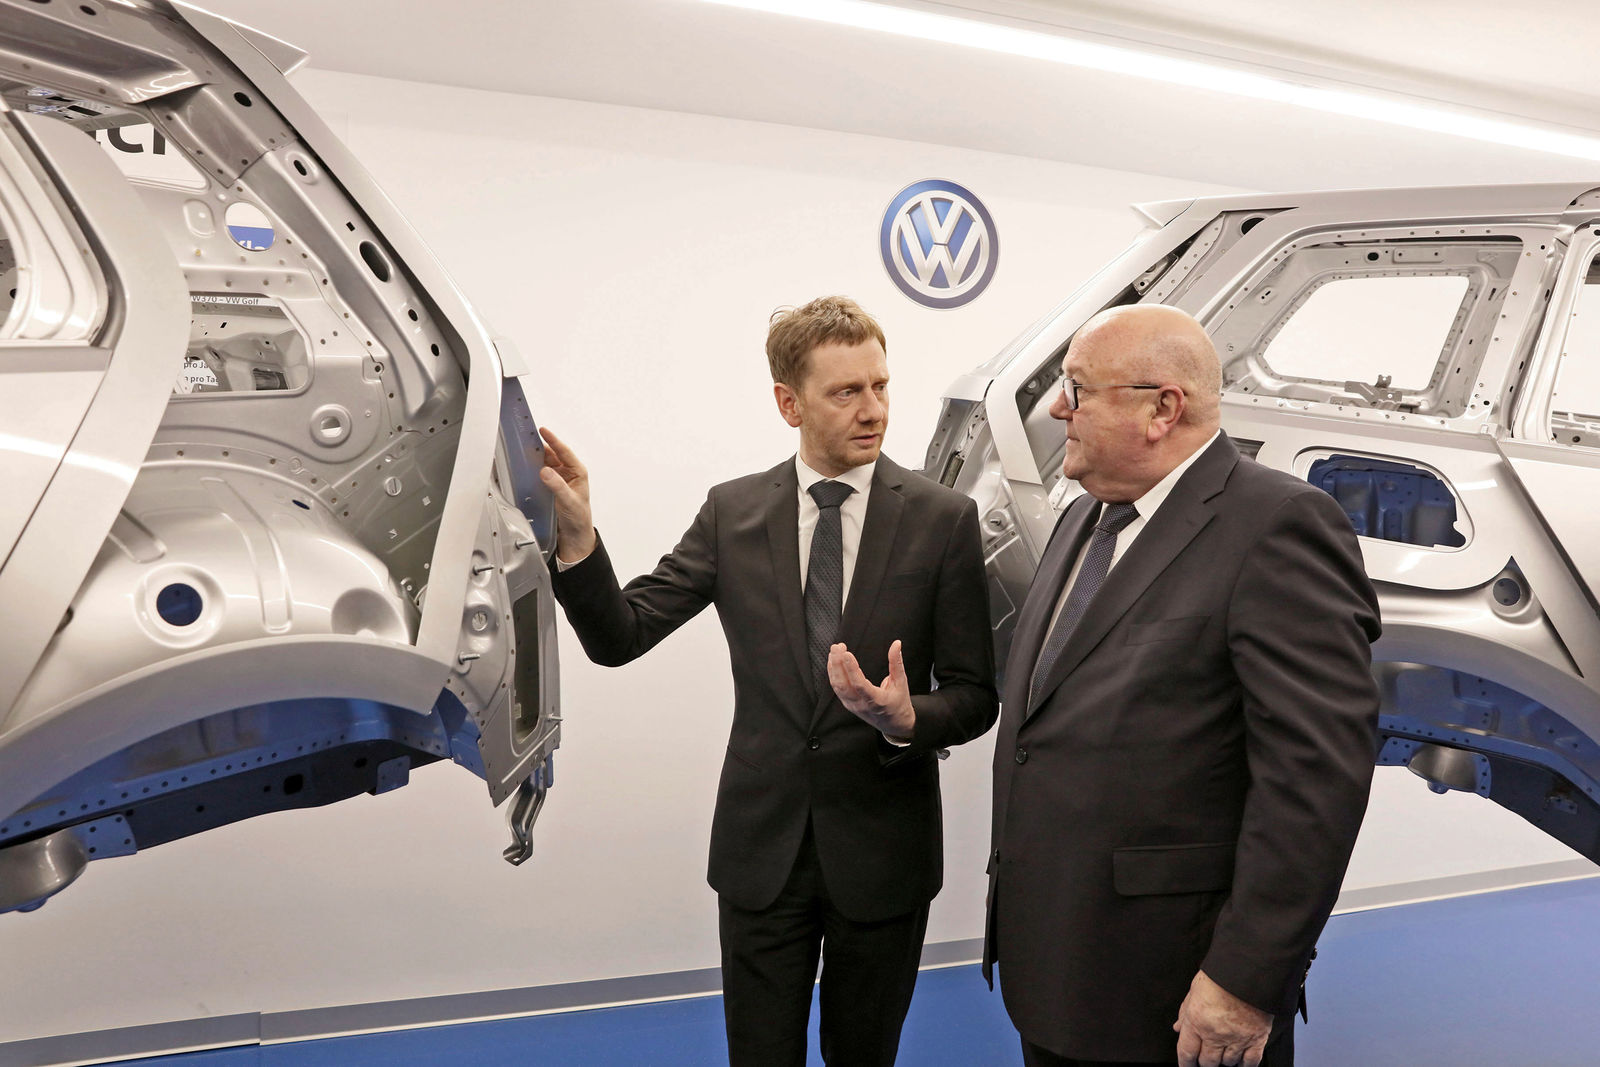 Sächsischer Ministerpräsident zu Besuch bei Volkswagen Sachsen in Zwickau